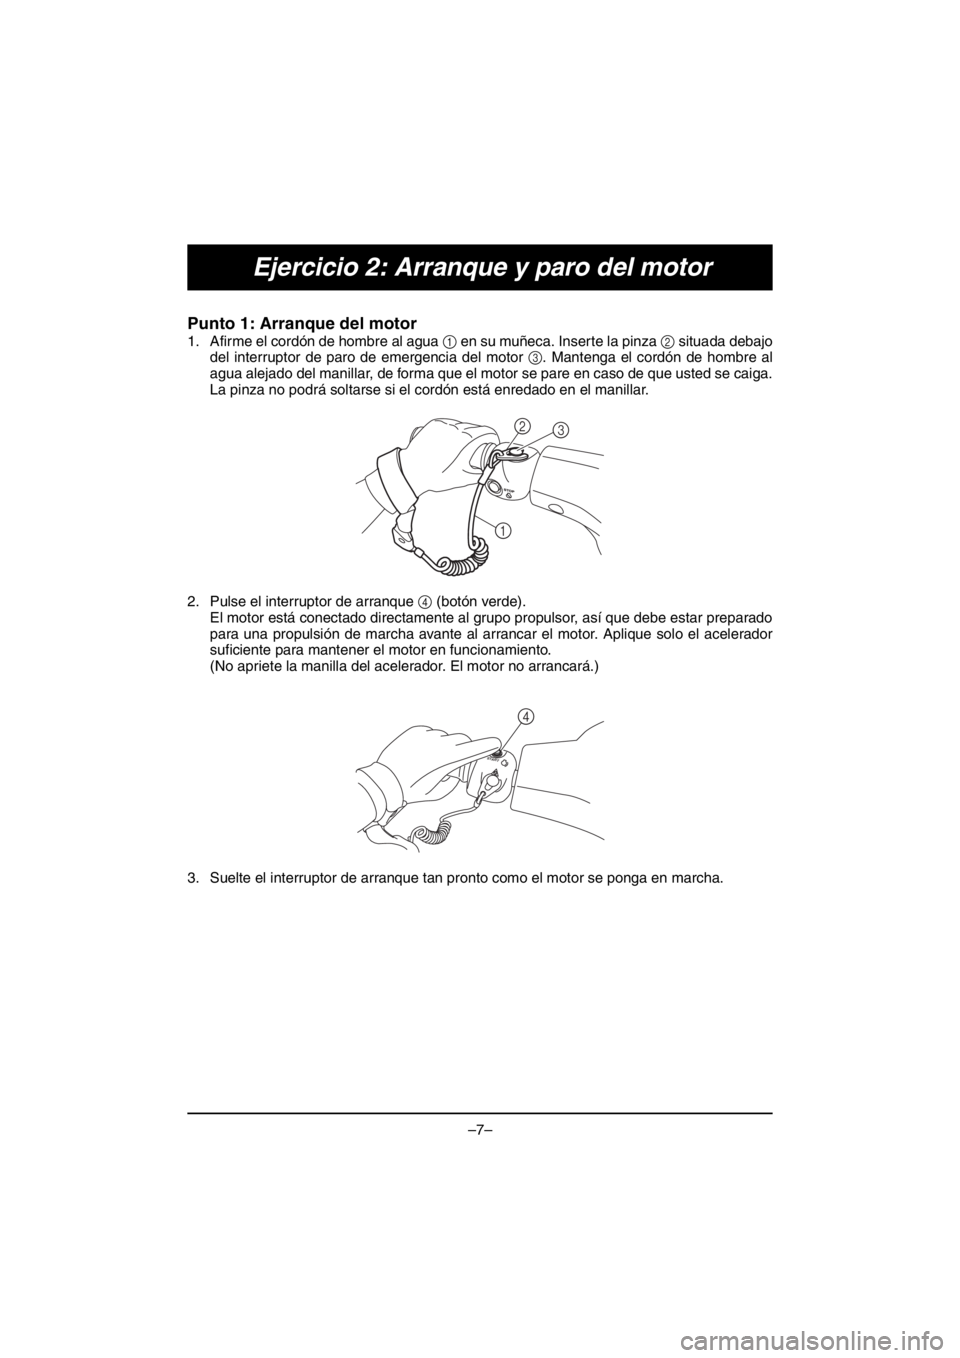 YAMAHA V1 2016 Manual Online –7–
Ejercicio 2: Arranque y paro del motor
Punto 1: Arranque del motor 
1. Afirme el cordón de hombre al agua 1 en su muñeca. Inserte la pinza 2 situada debajo
del interruptor de paro de emergen